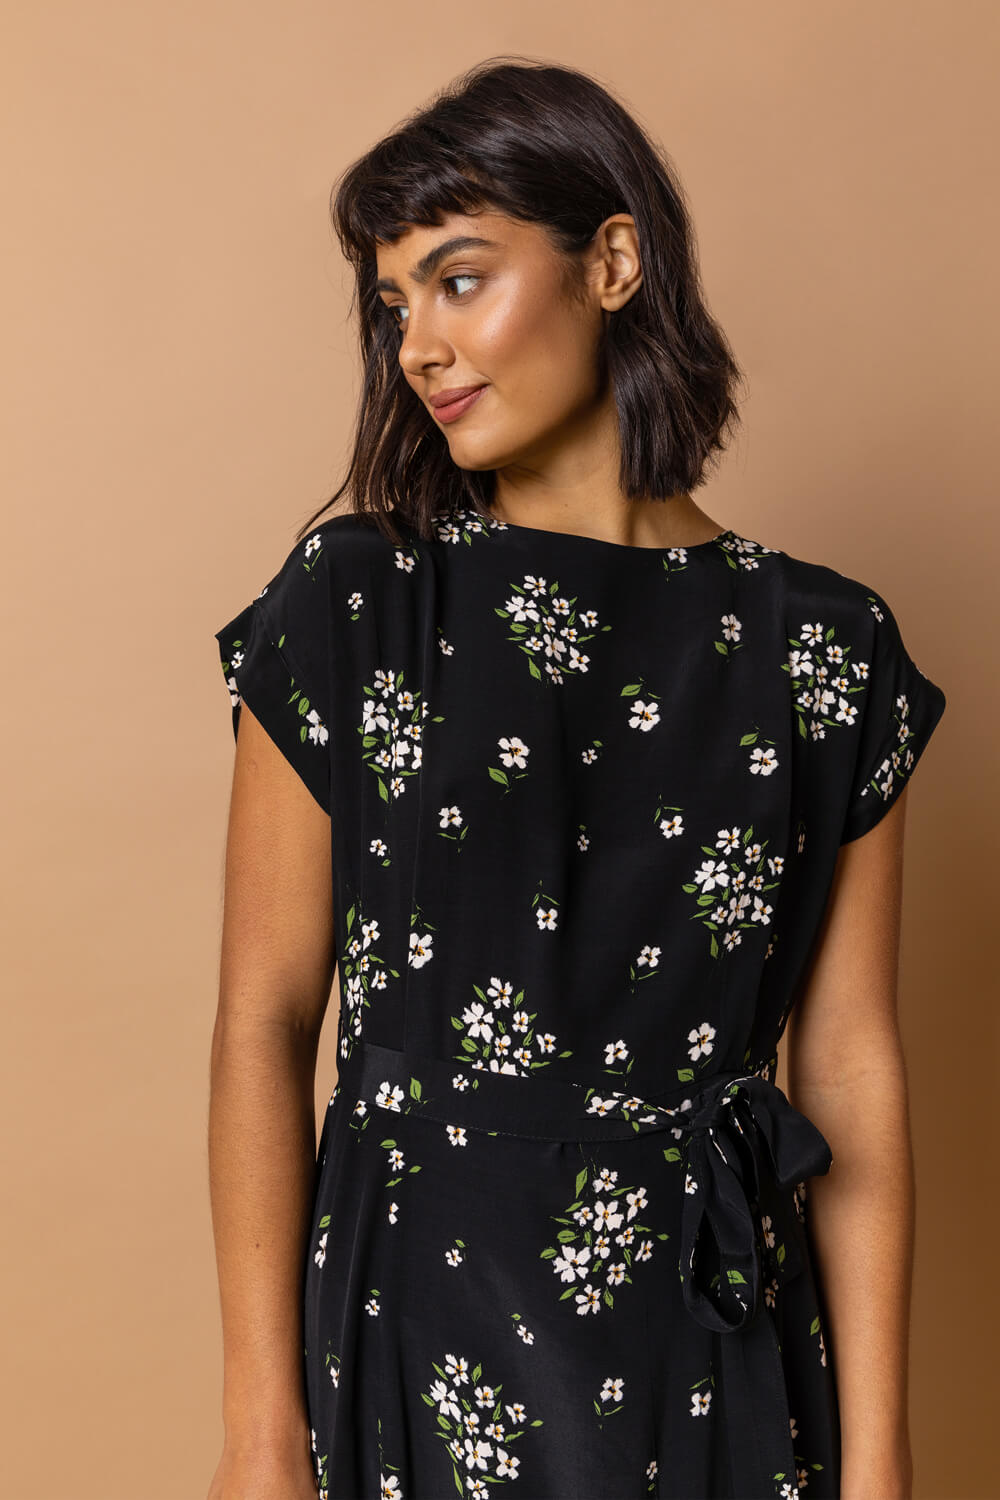 Black Floral Print Belted A-Line Dress, Image 3 of 3